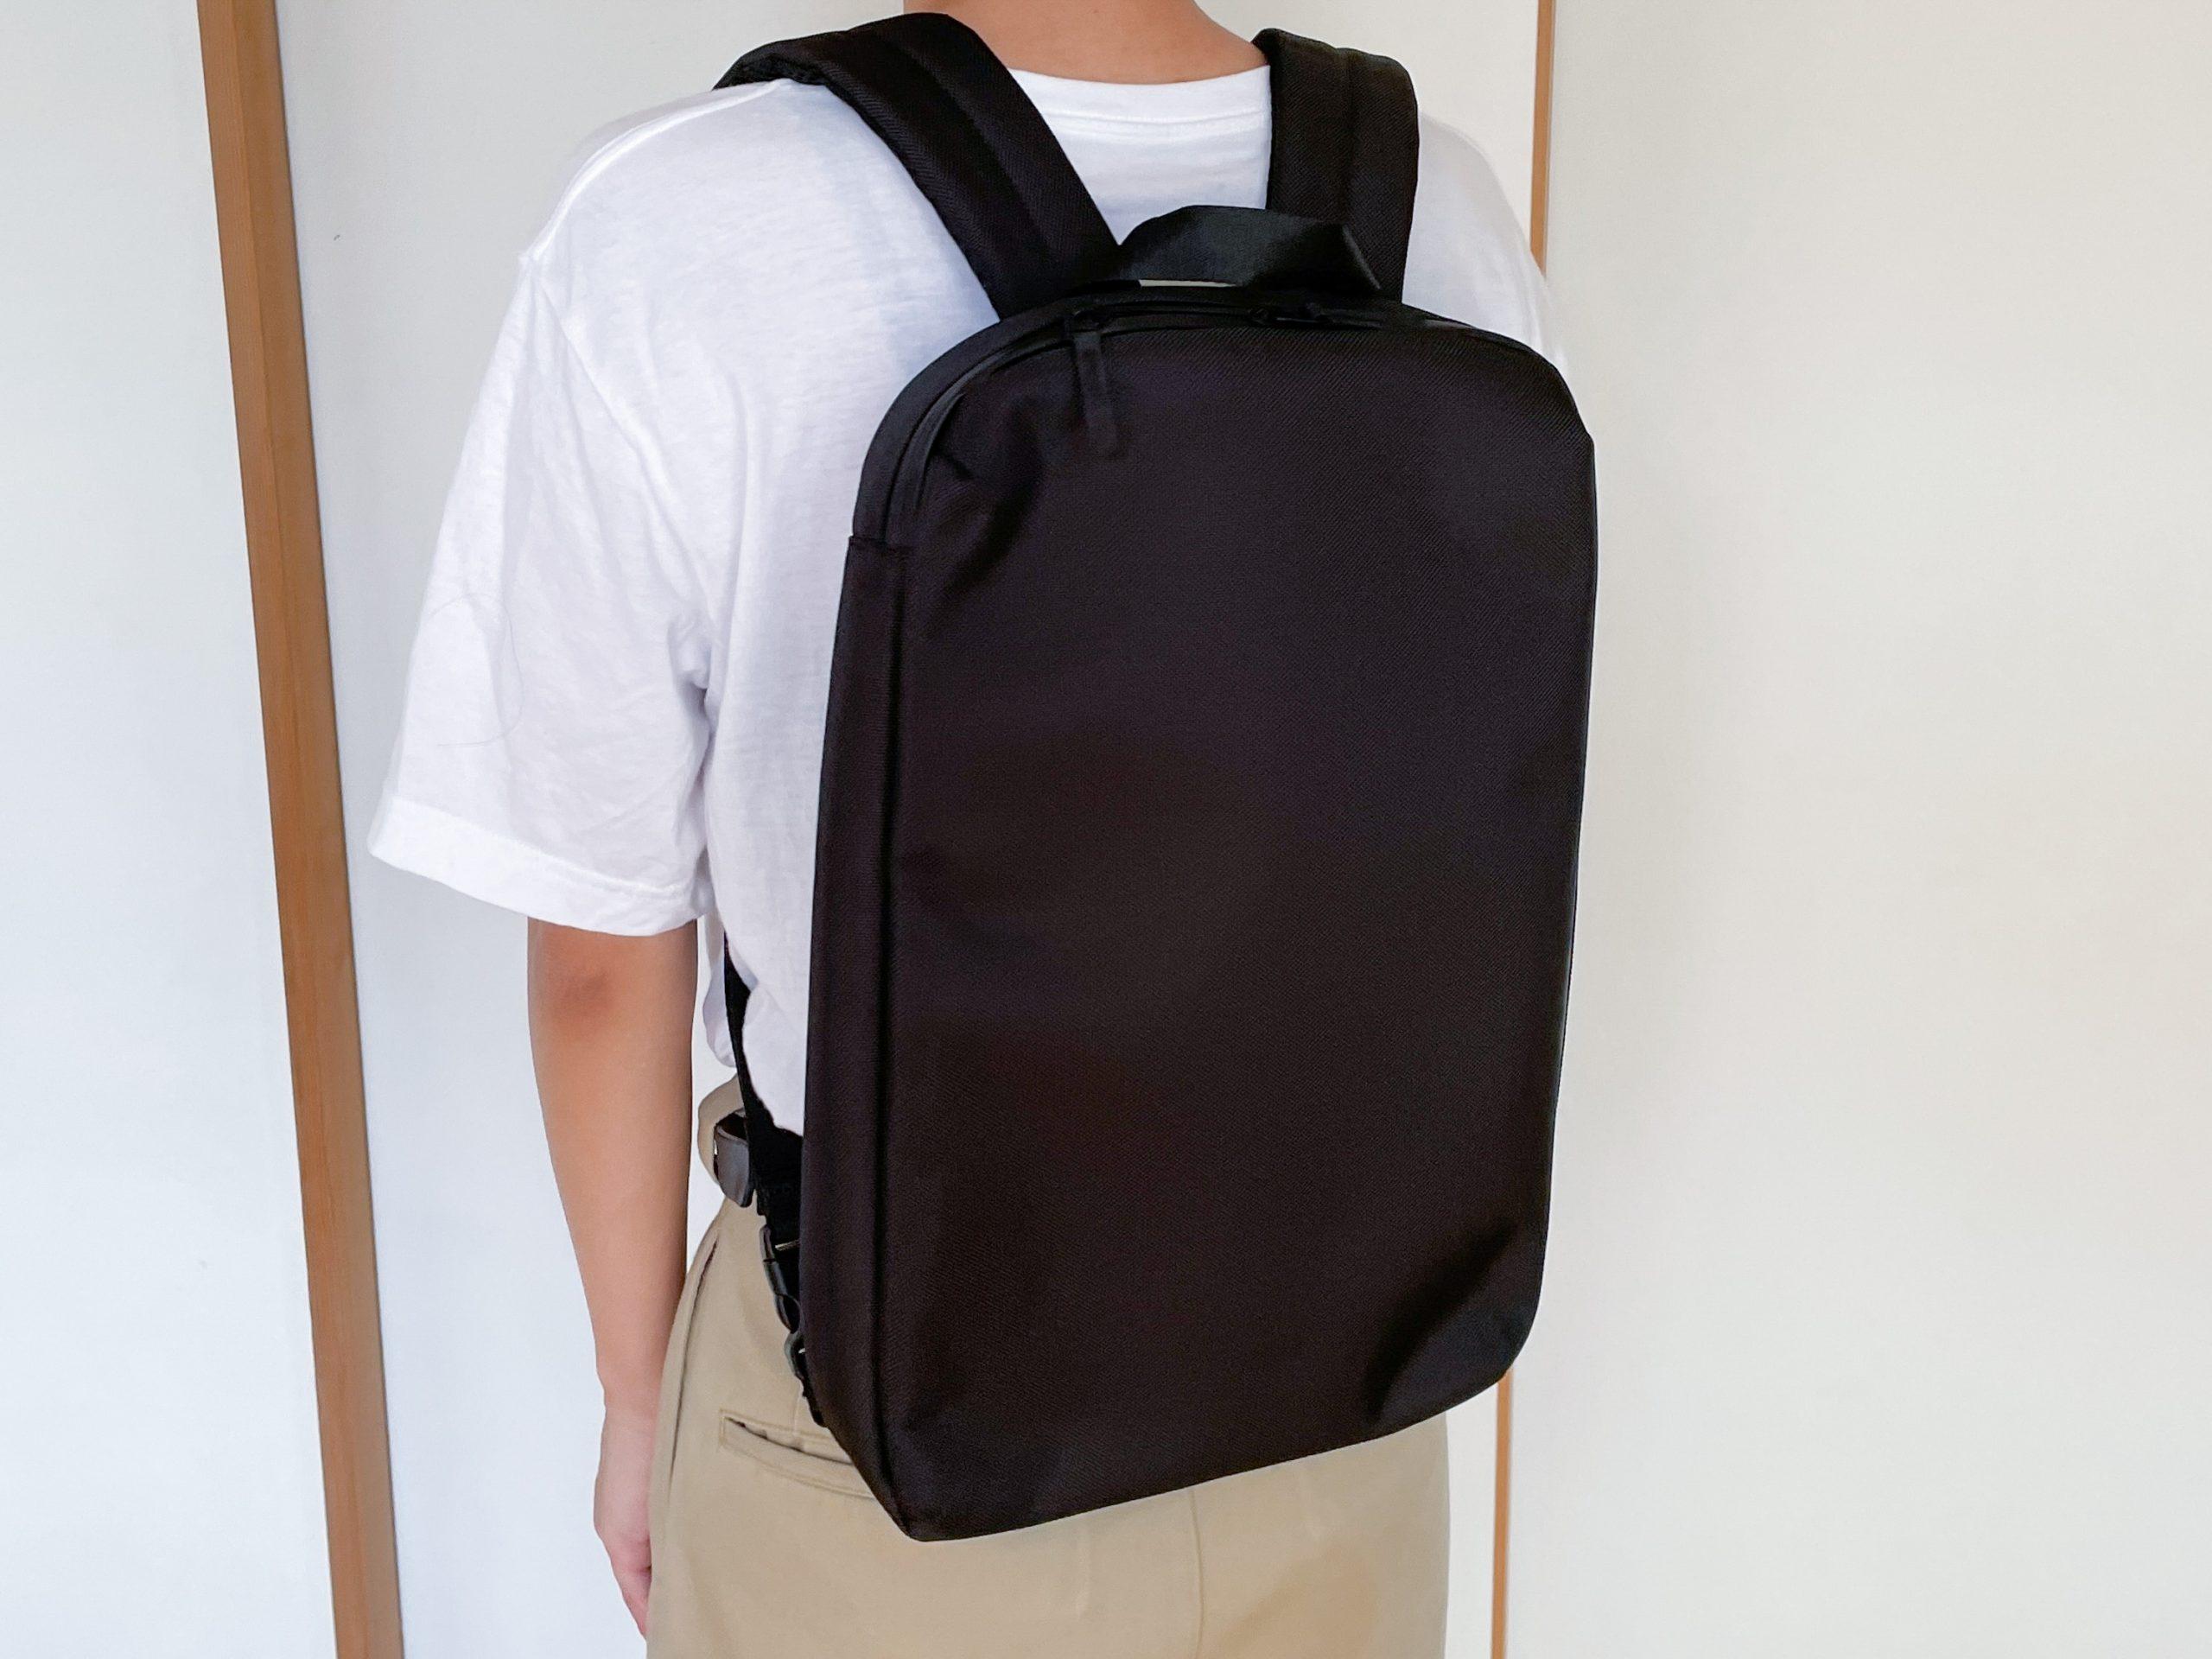 ユニクロの3WAYバッグ、「PCを持ち運びたいけど大きなバッグはいらない ...